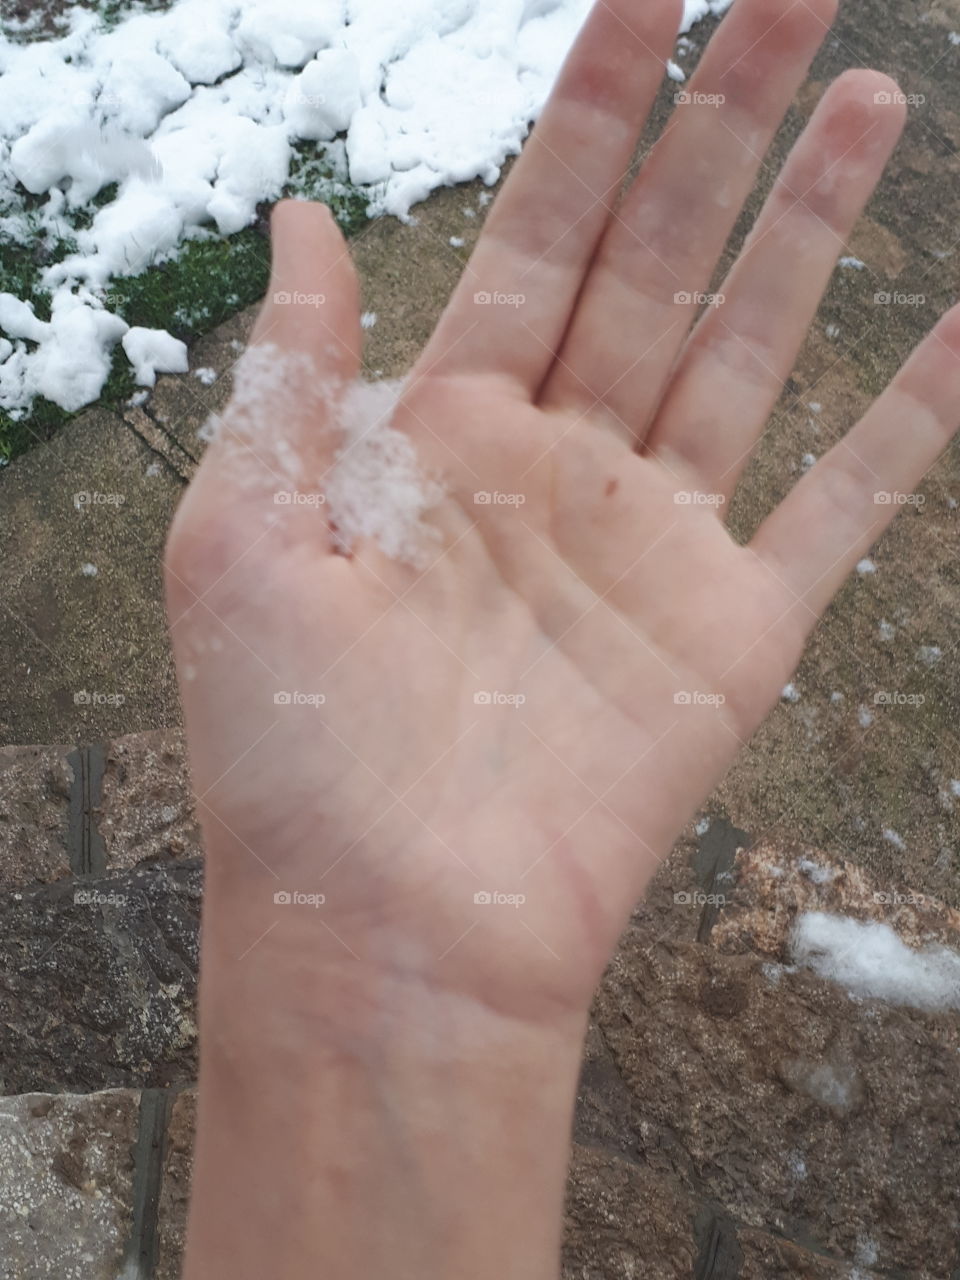 huge snowflake